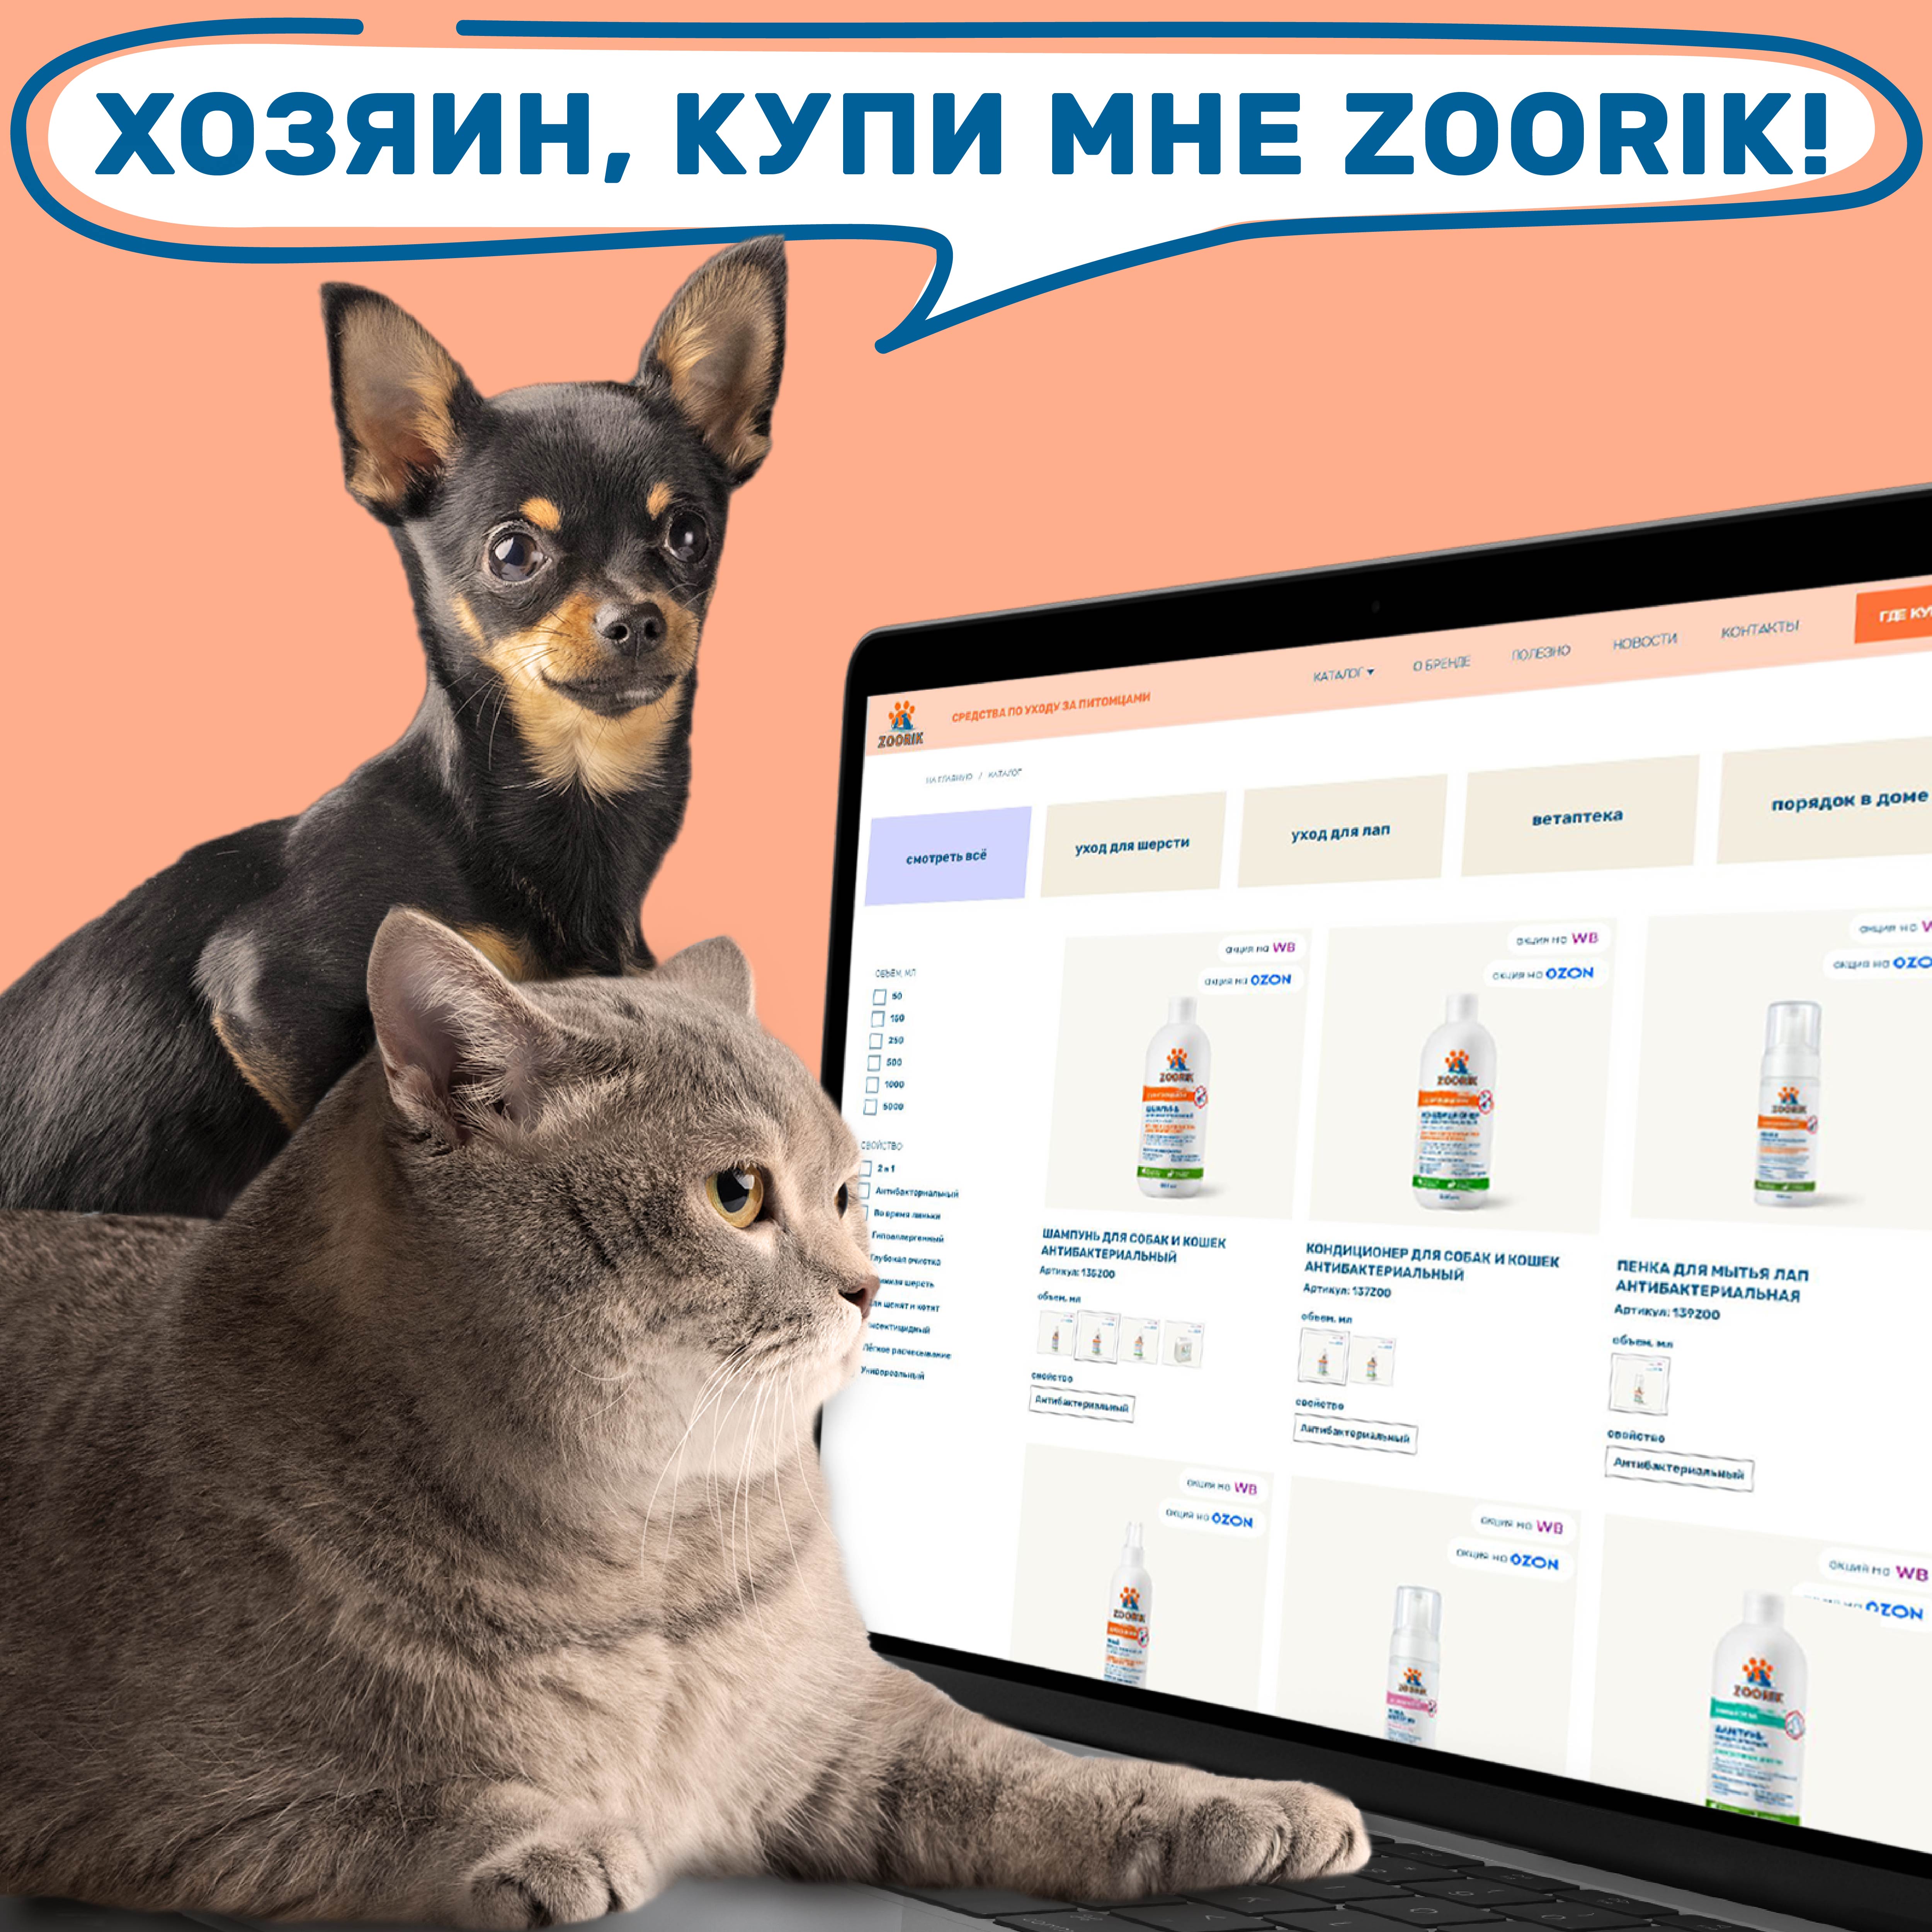 Шампунь для собак и кошек ZOORIK антибактериальный 5000 мл - фото 13